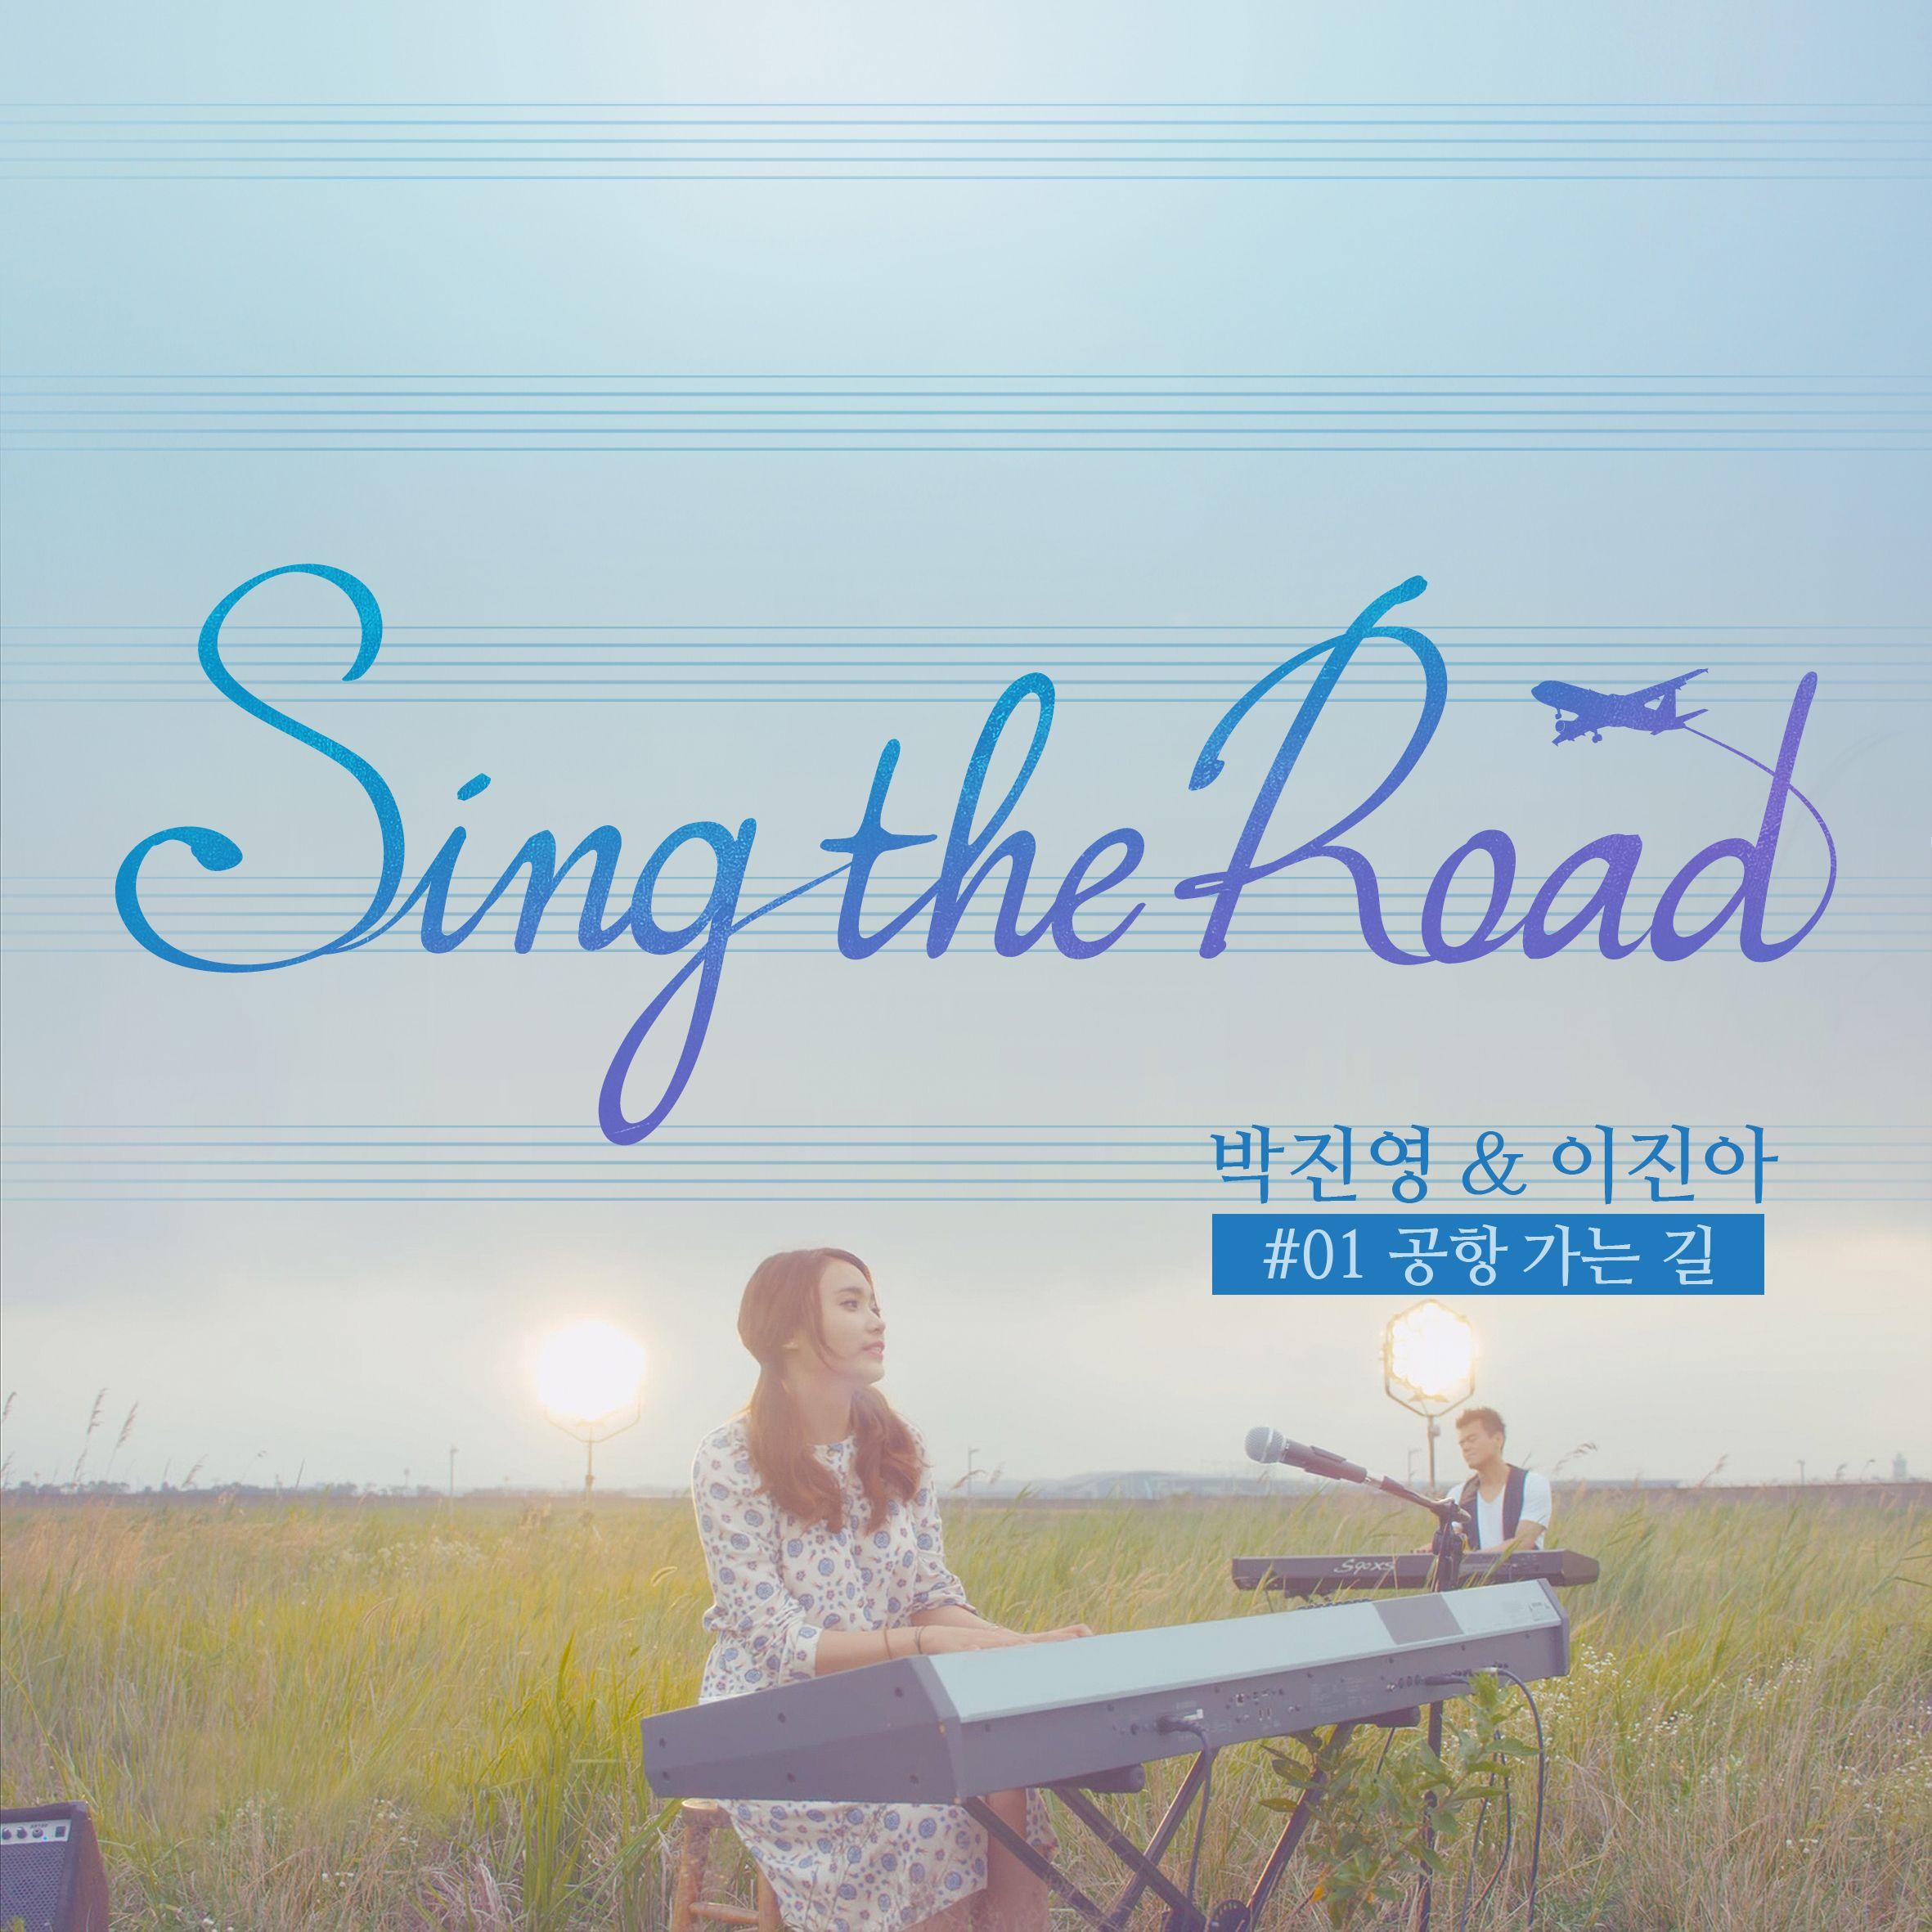 朴振荣 - 공항 가는 길 (Sing The Road #01)